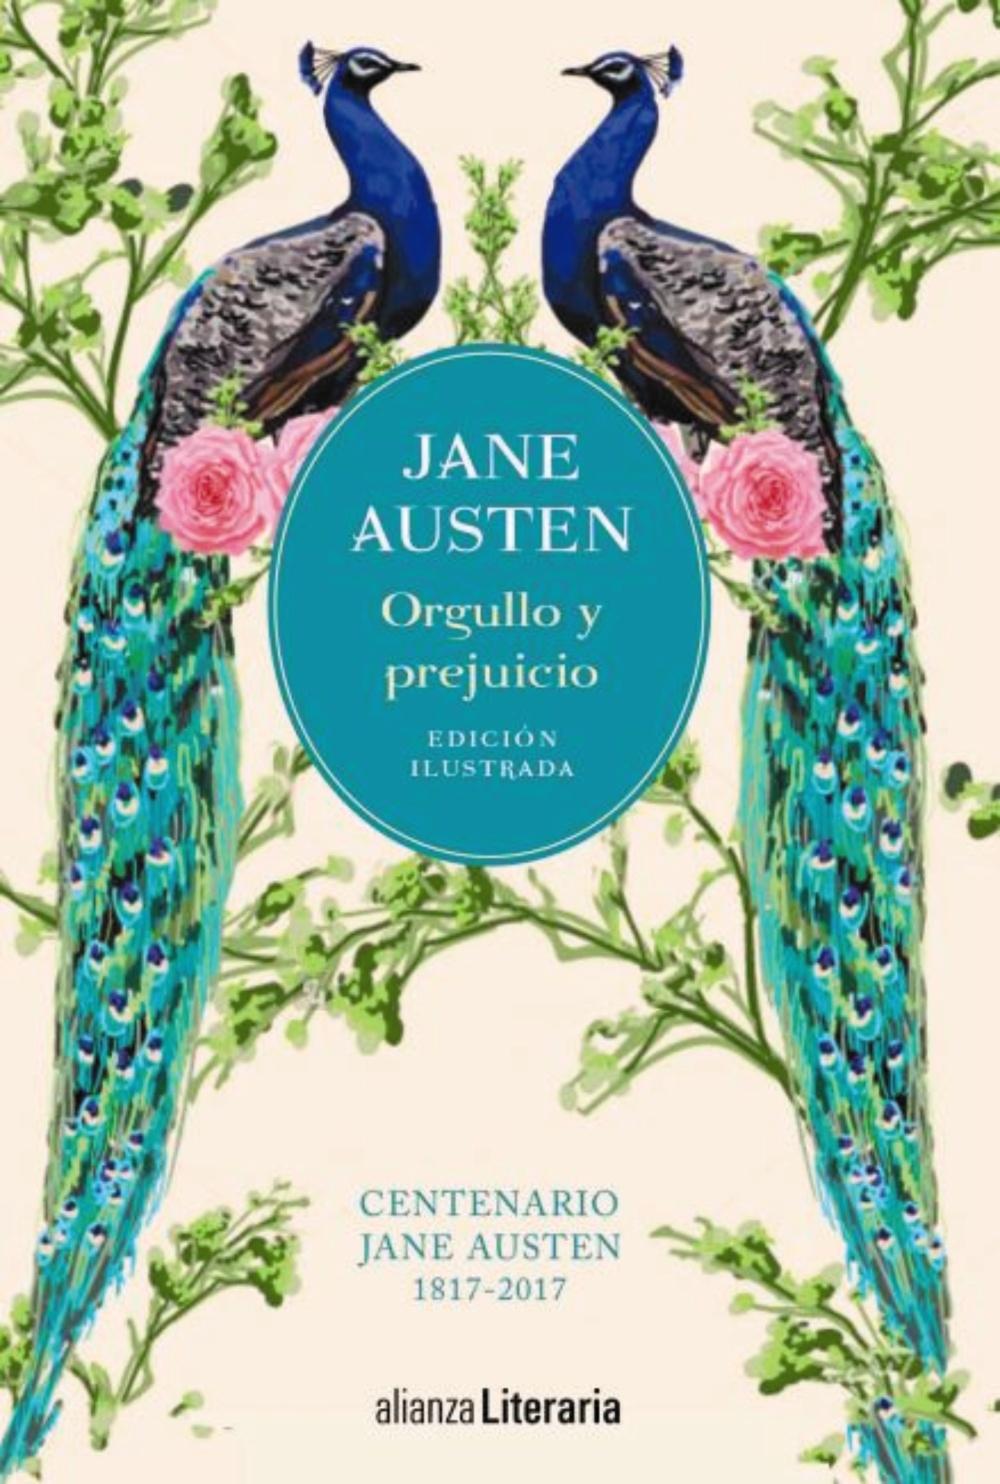 Orgullo y prejuicio "Edición ilustrada. Centenario Jane Austen 1817-2017"